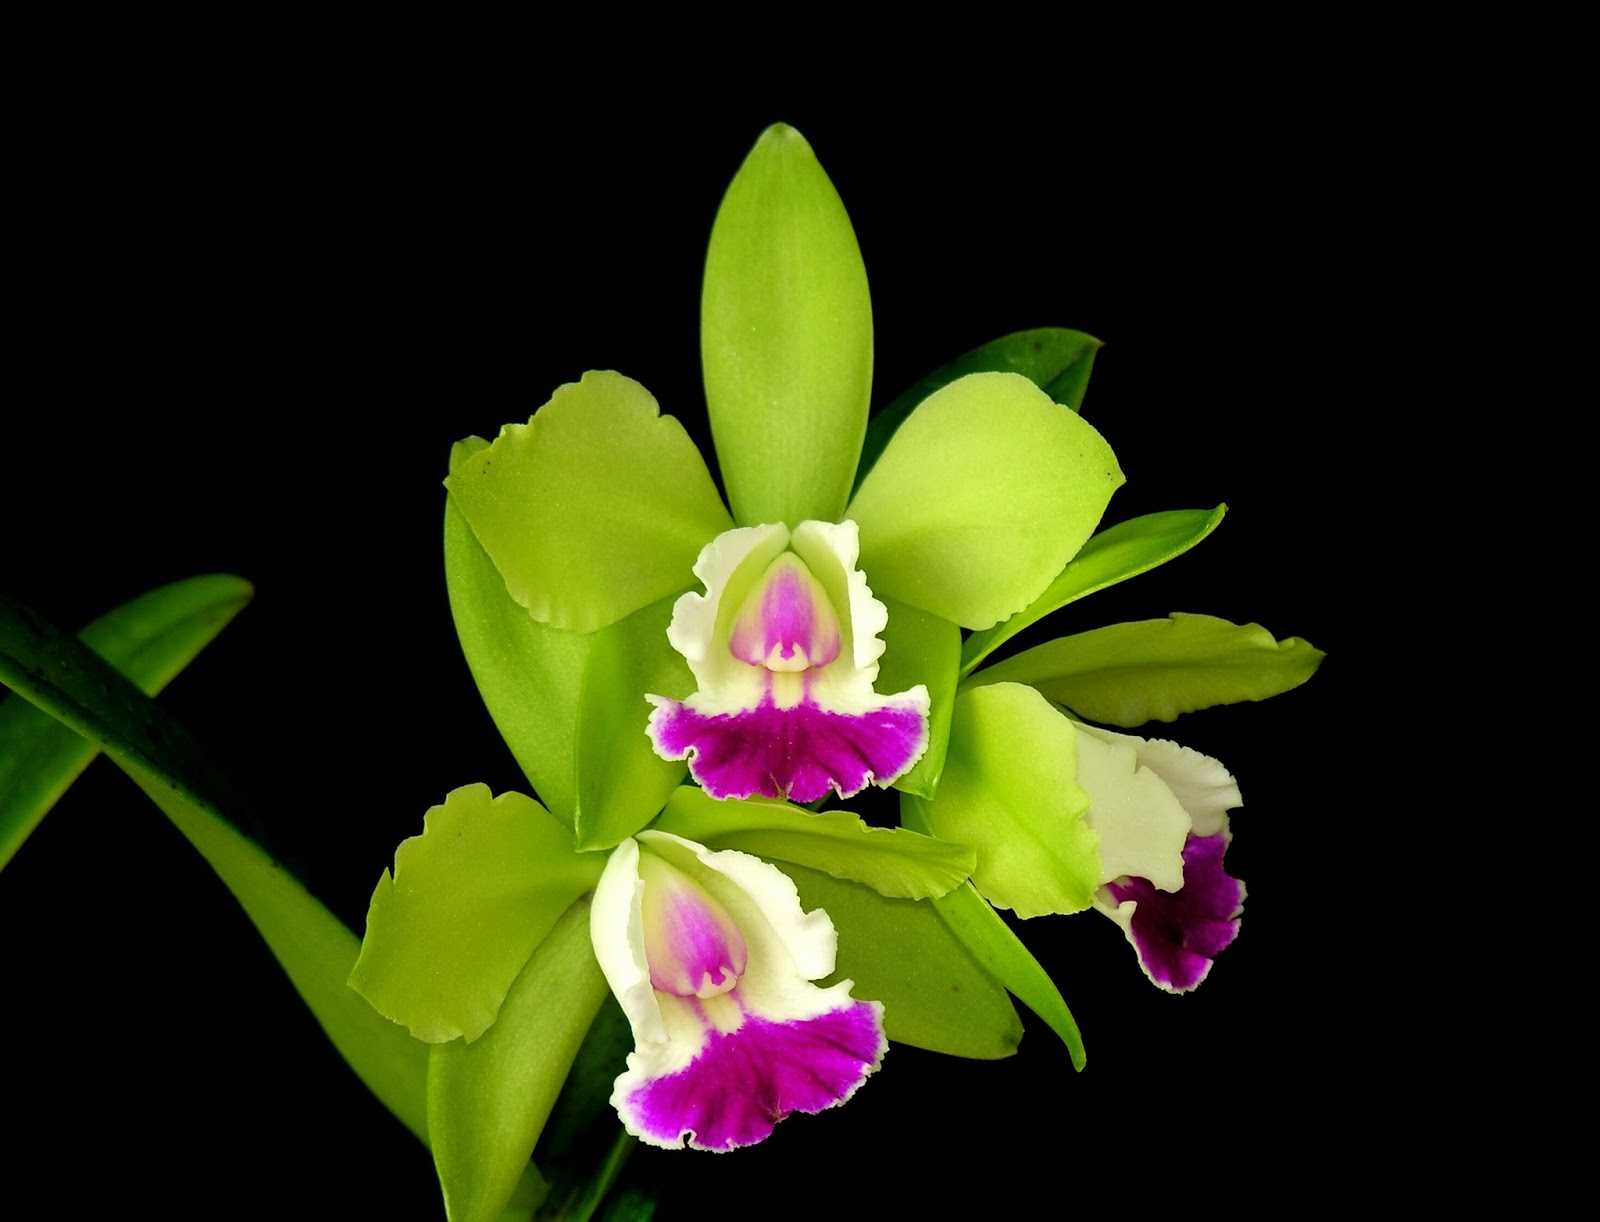 Зеленые орхидеи: обзор 10 необычных сортов для вашего подоконника, в том числе популярные фаленопсисы зеленое яблоко, виоланс альба, дендробиум анна грин и другие